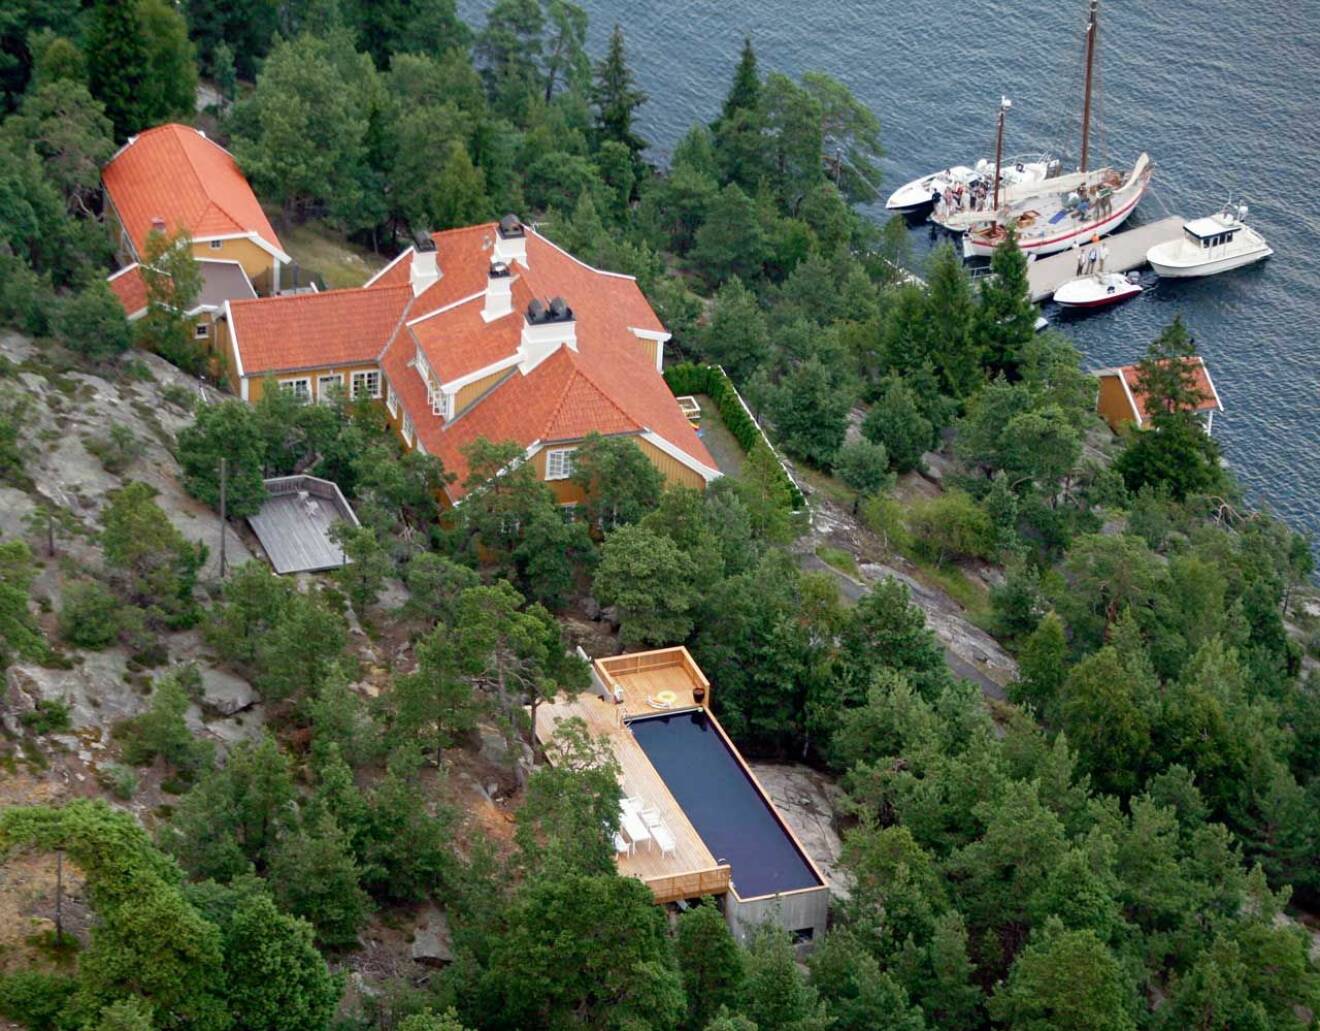 Prinsessan Märtha Louise säljer sitt ärvda sommarhus Bloksbjerg, ritat av den norske arkitekten Gudolf Blakstad och byggt 1918.